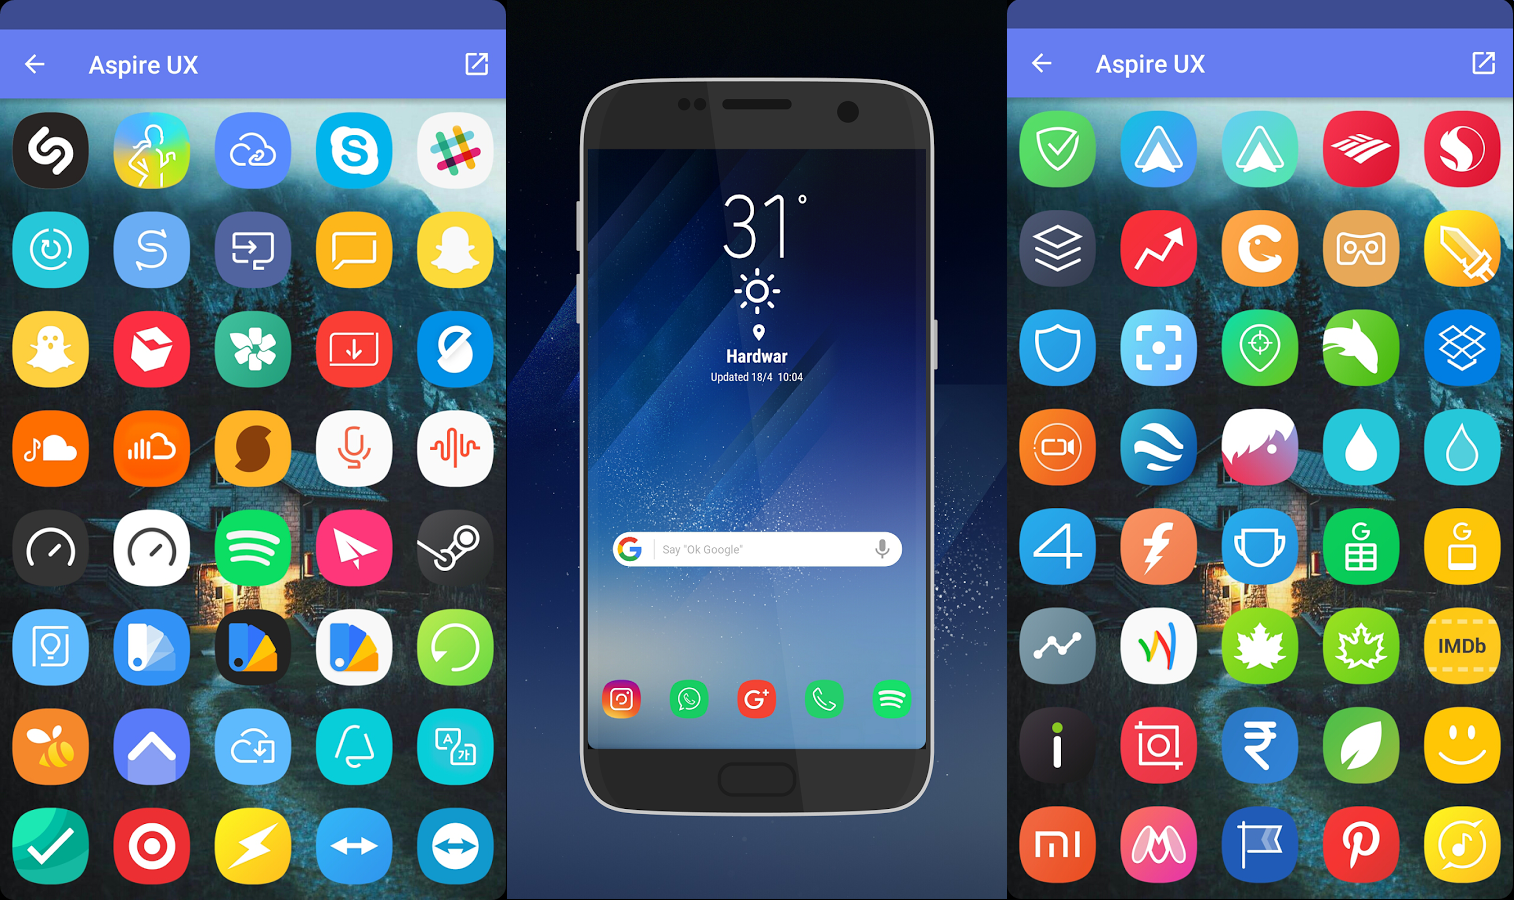 pack de iconos Android gratis basado en el Galaxy s8